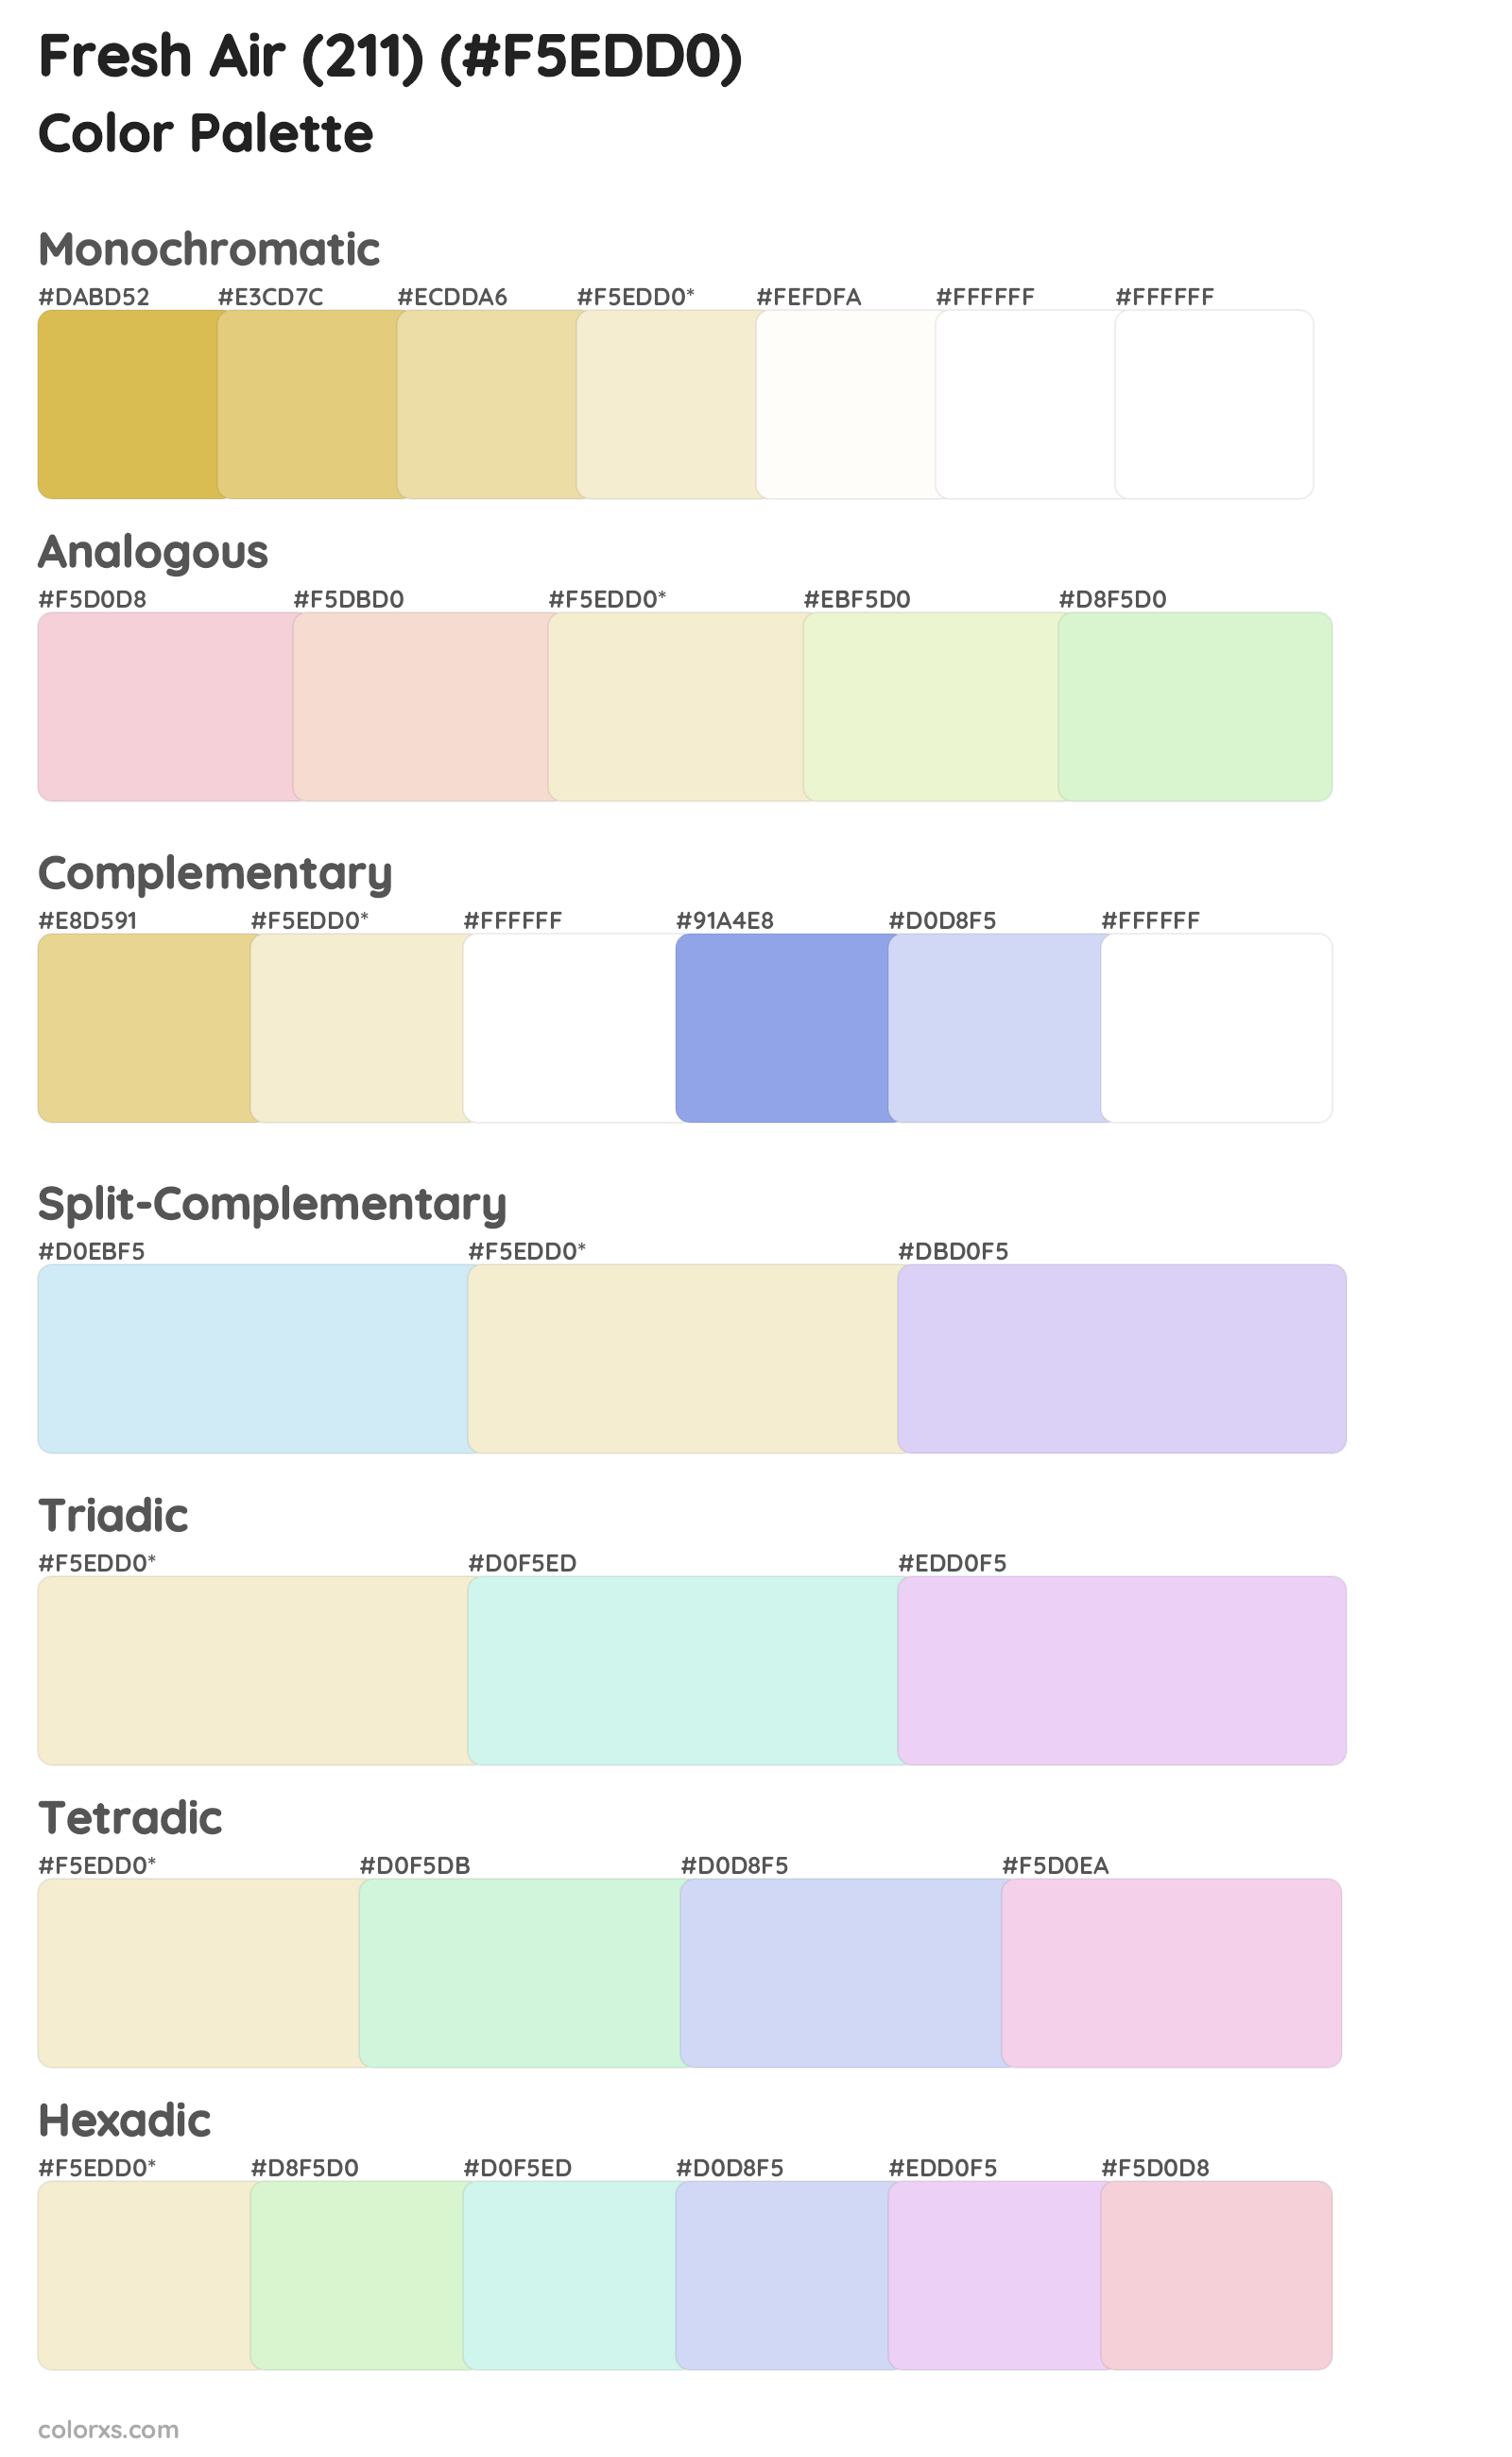 Fresh Air (211) Color Scheme Palettes